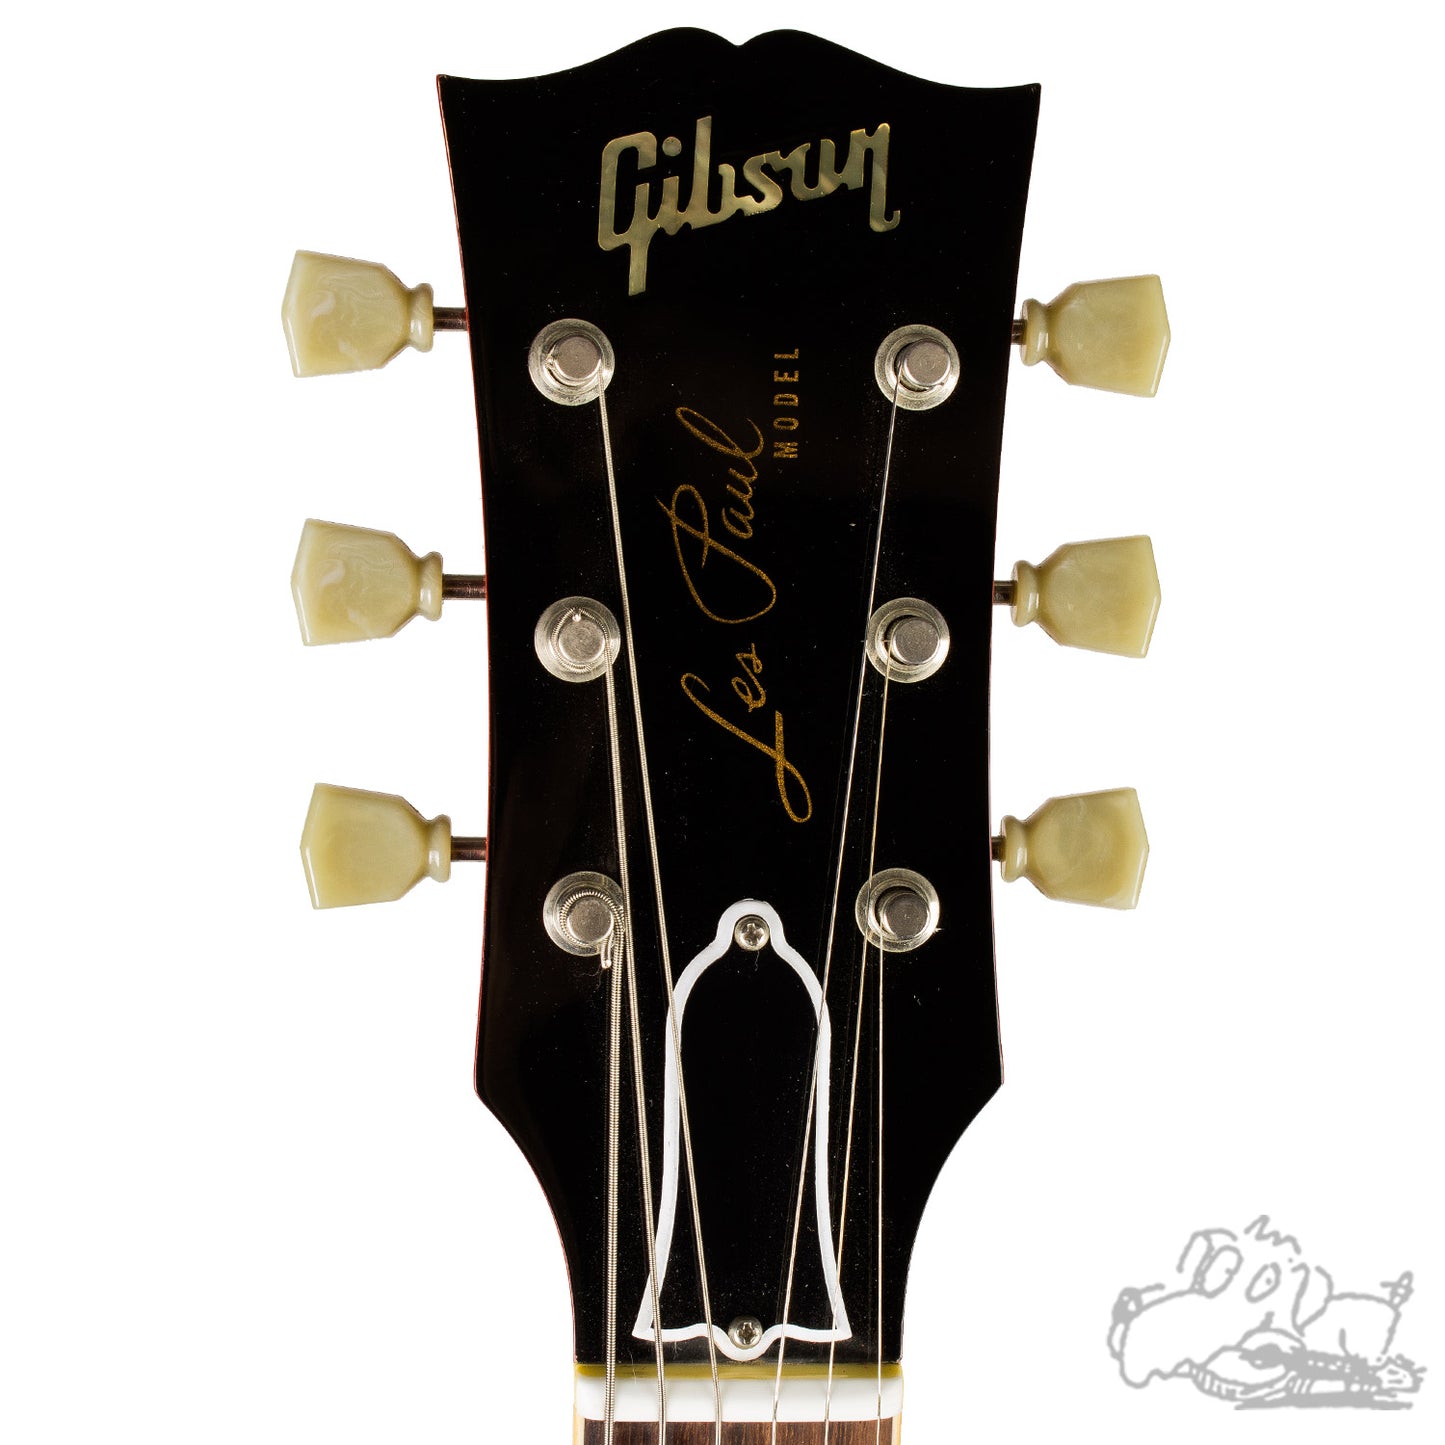 1998 Gibson Custom Shop R8 Les Paul w/ a BIG flame